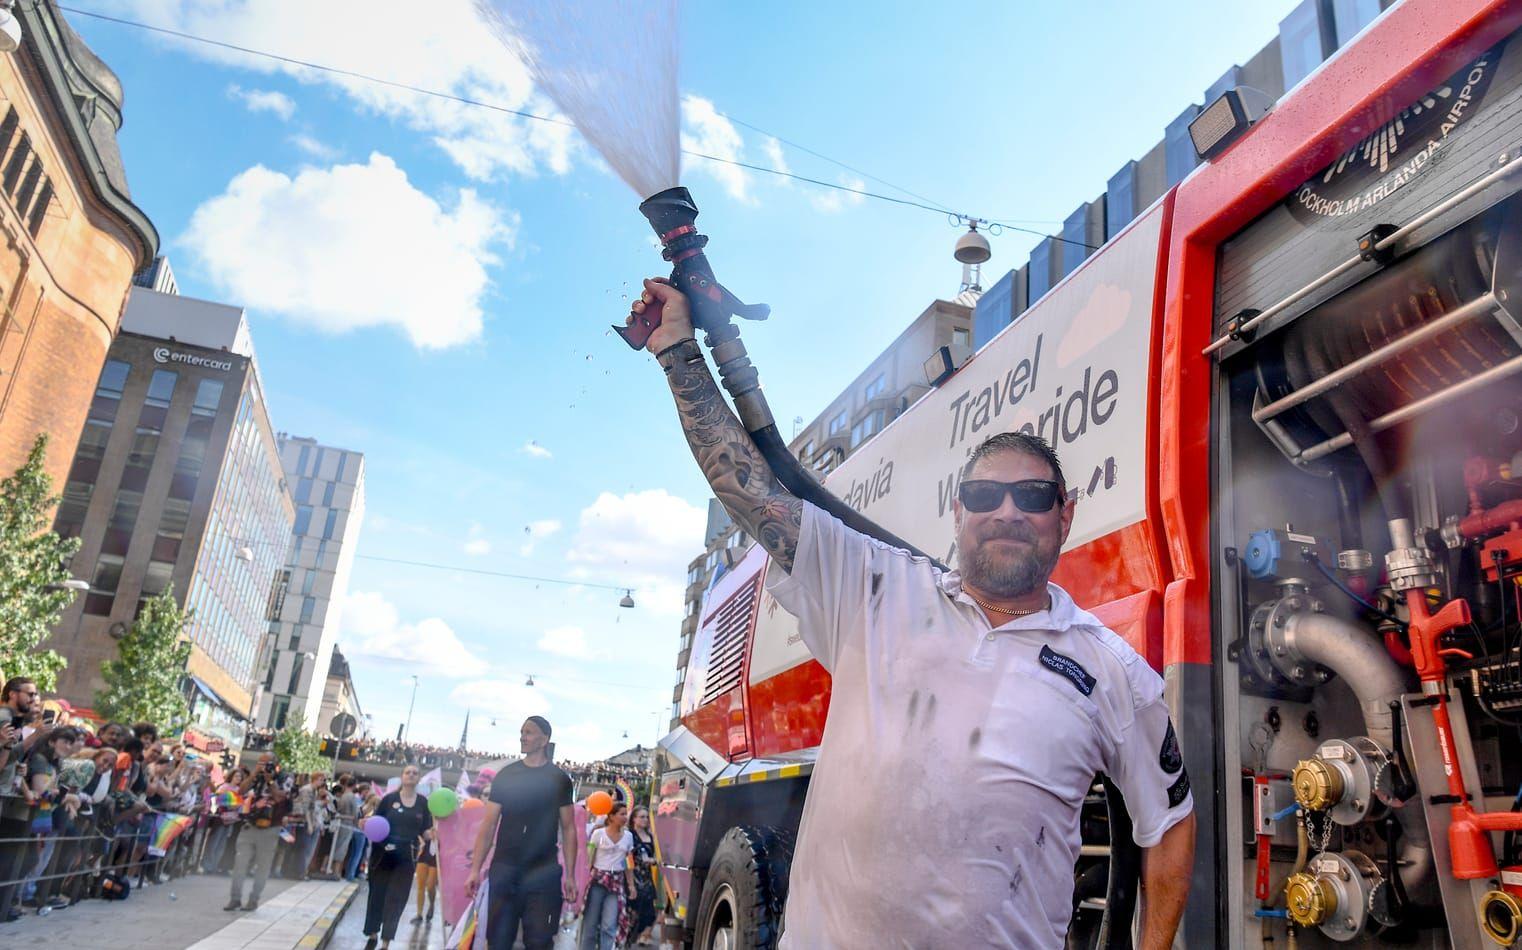 Swedavias brandbil deltog i paraden och ska enligt Aftonbladet ha sprutat vatten på NMR-demonstranter. Det är oklart om mannen på bilden har något med den specifika händelsen att göra. 